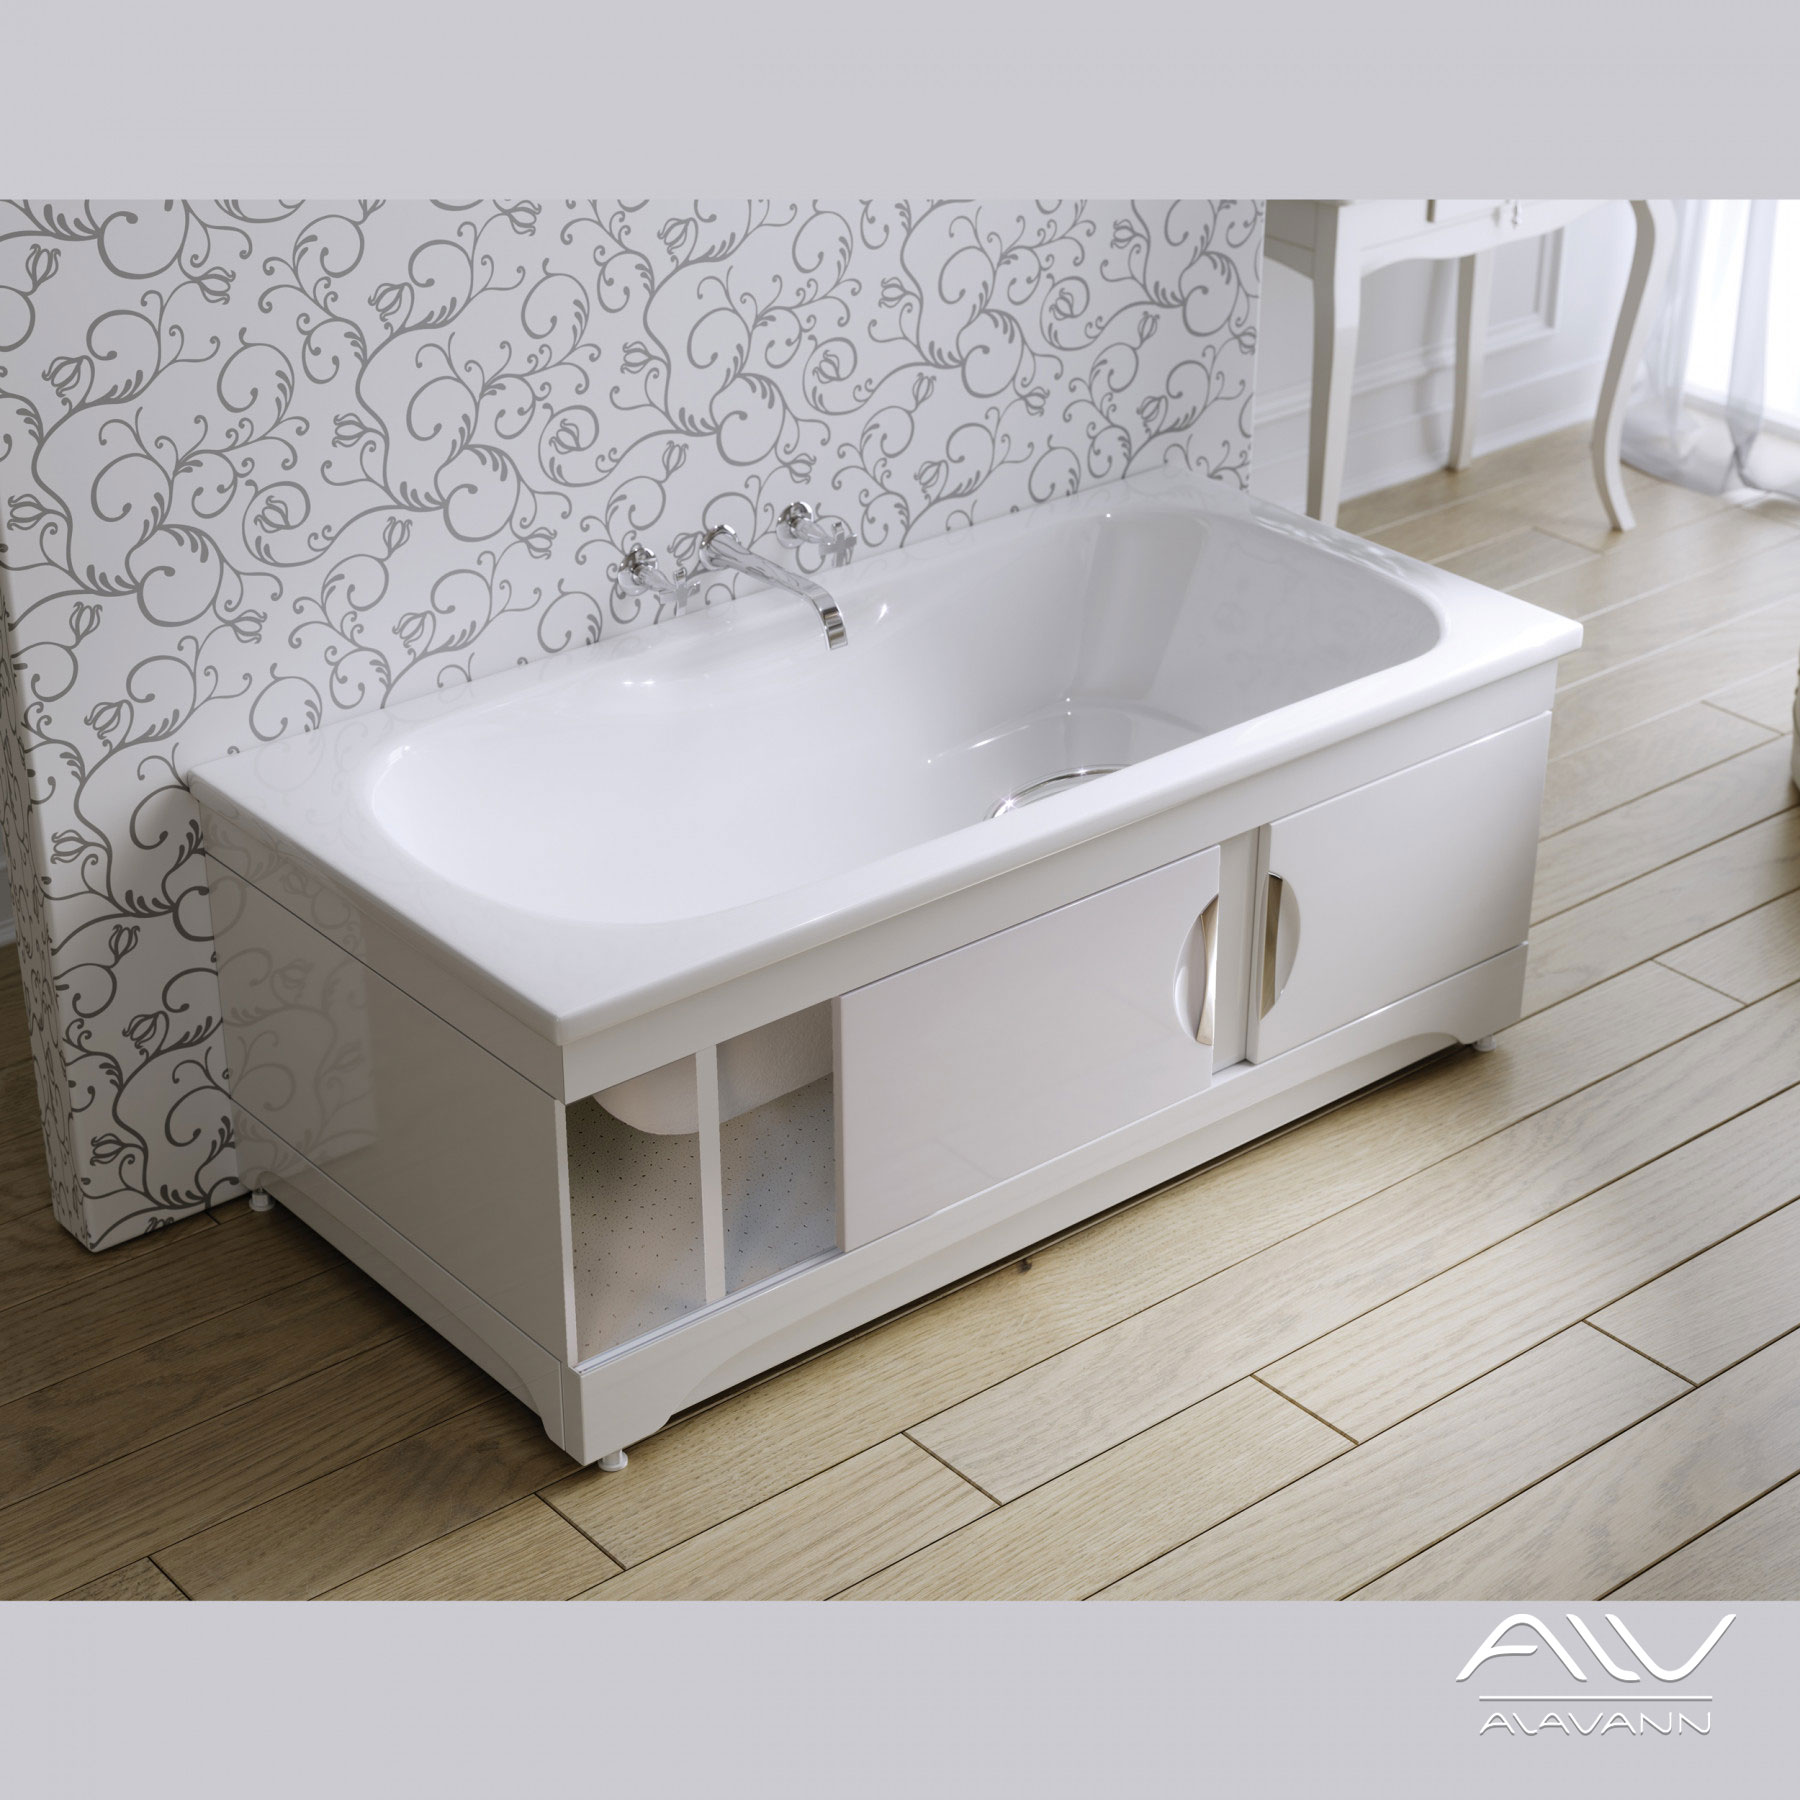 Фронтальный экран для ванны Alavann Monaco Купе 150 см МД-1607-1500-01 - фото 5